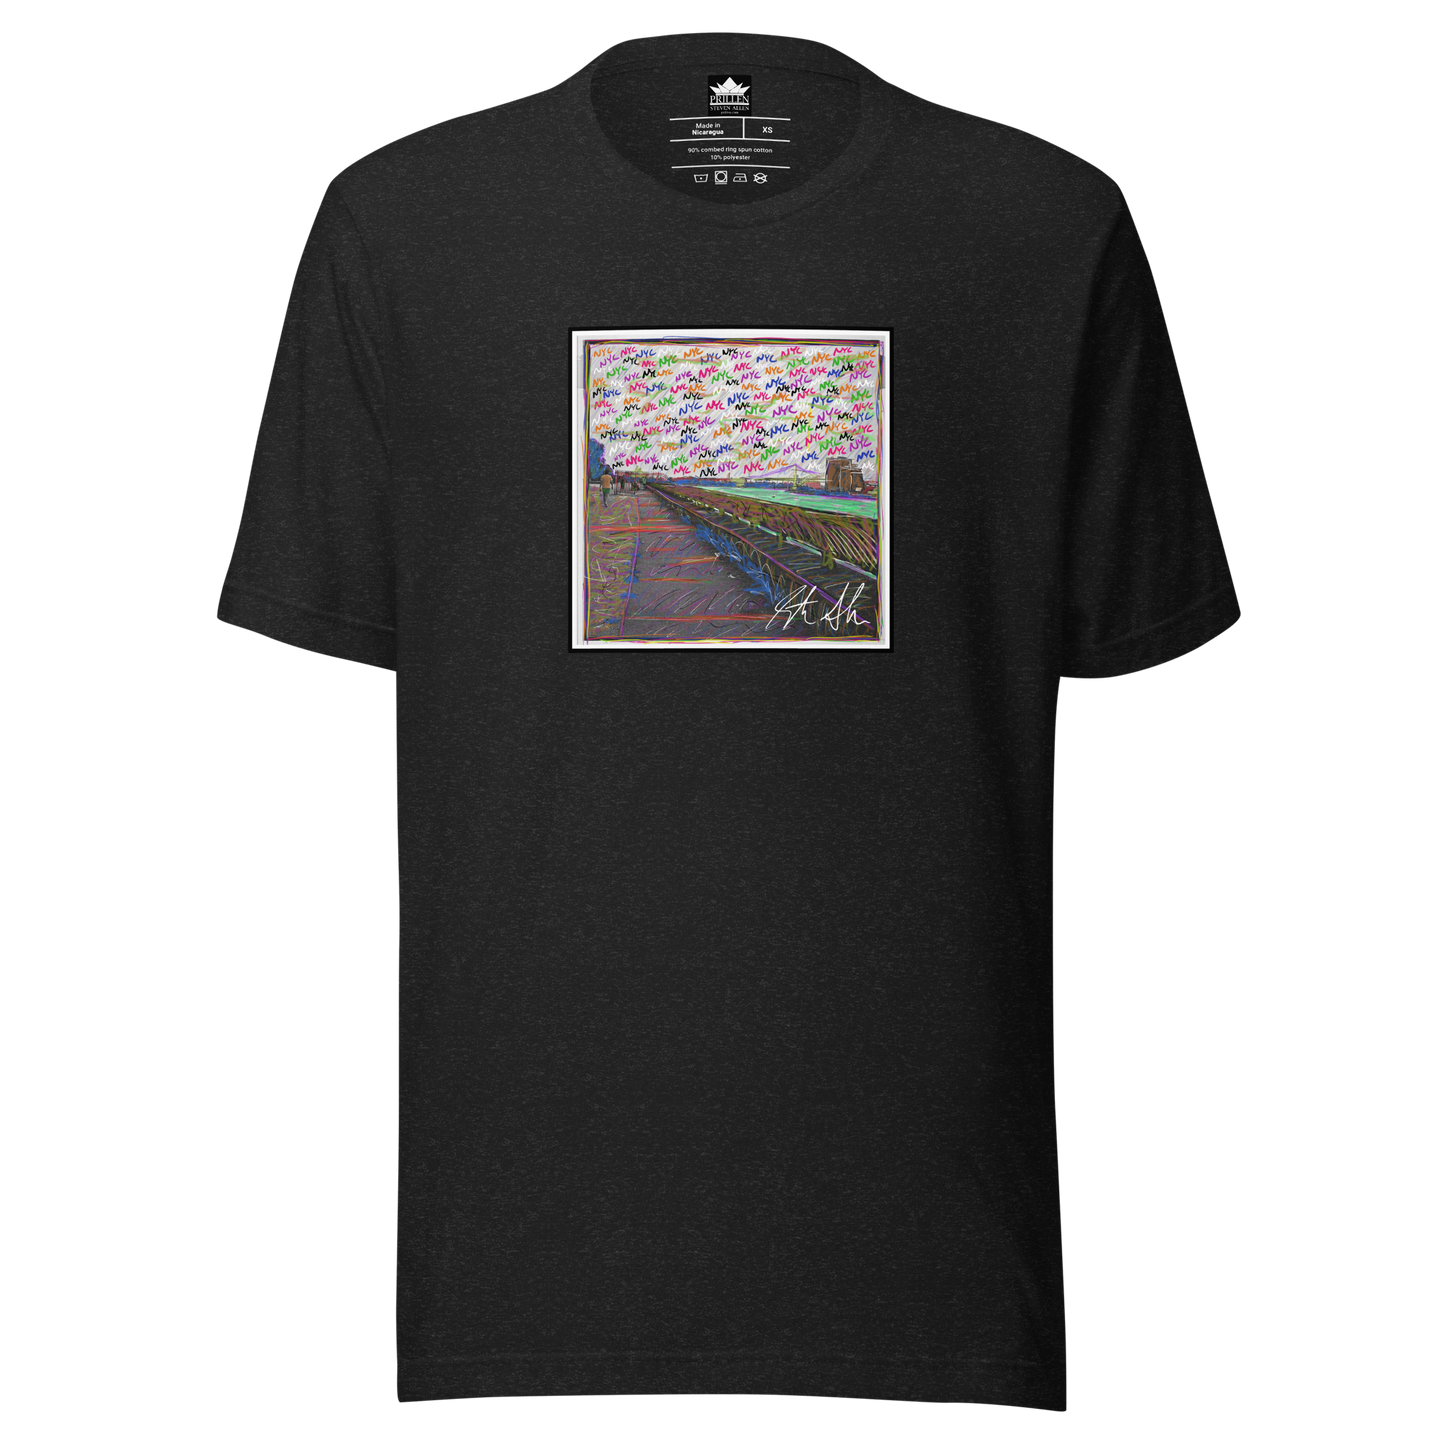 Prillen - Steven Allen - Colorized NYC East River - Photo T-Shirt